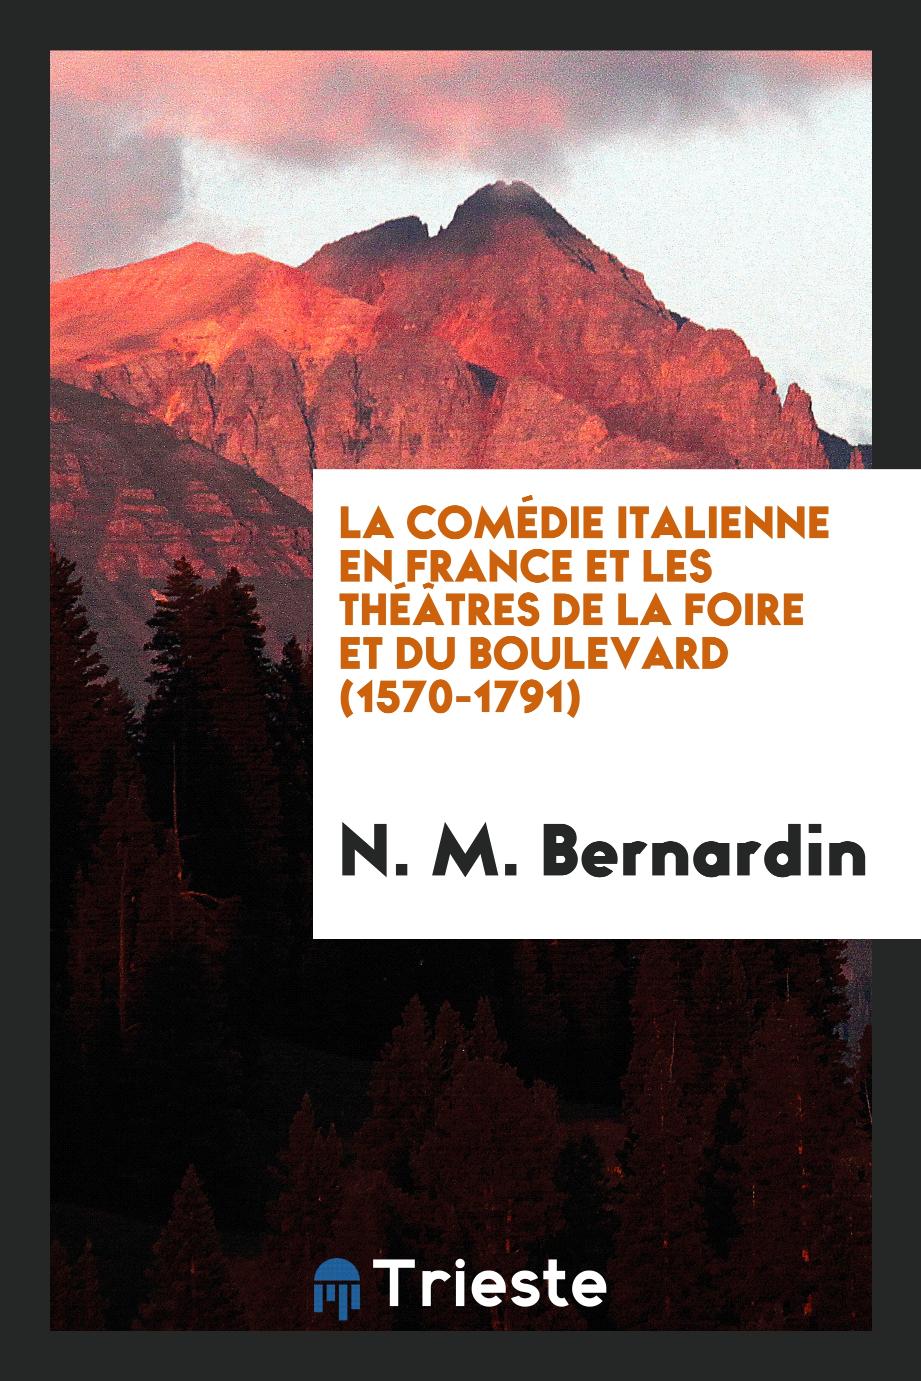 La comédie italienne en France et les théâtres de la foire et du boulevard (1570-1791)